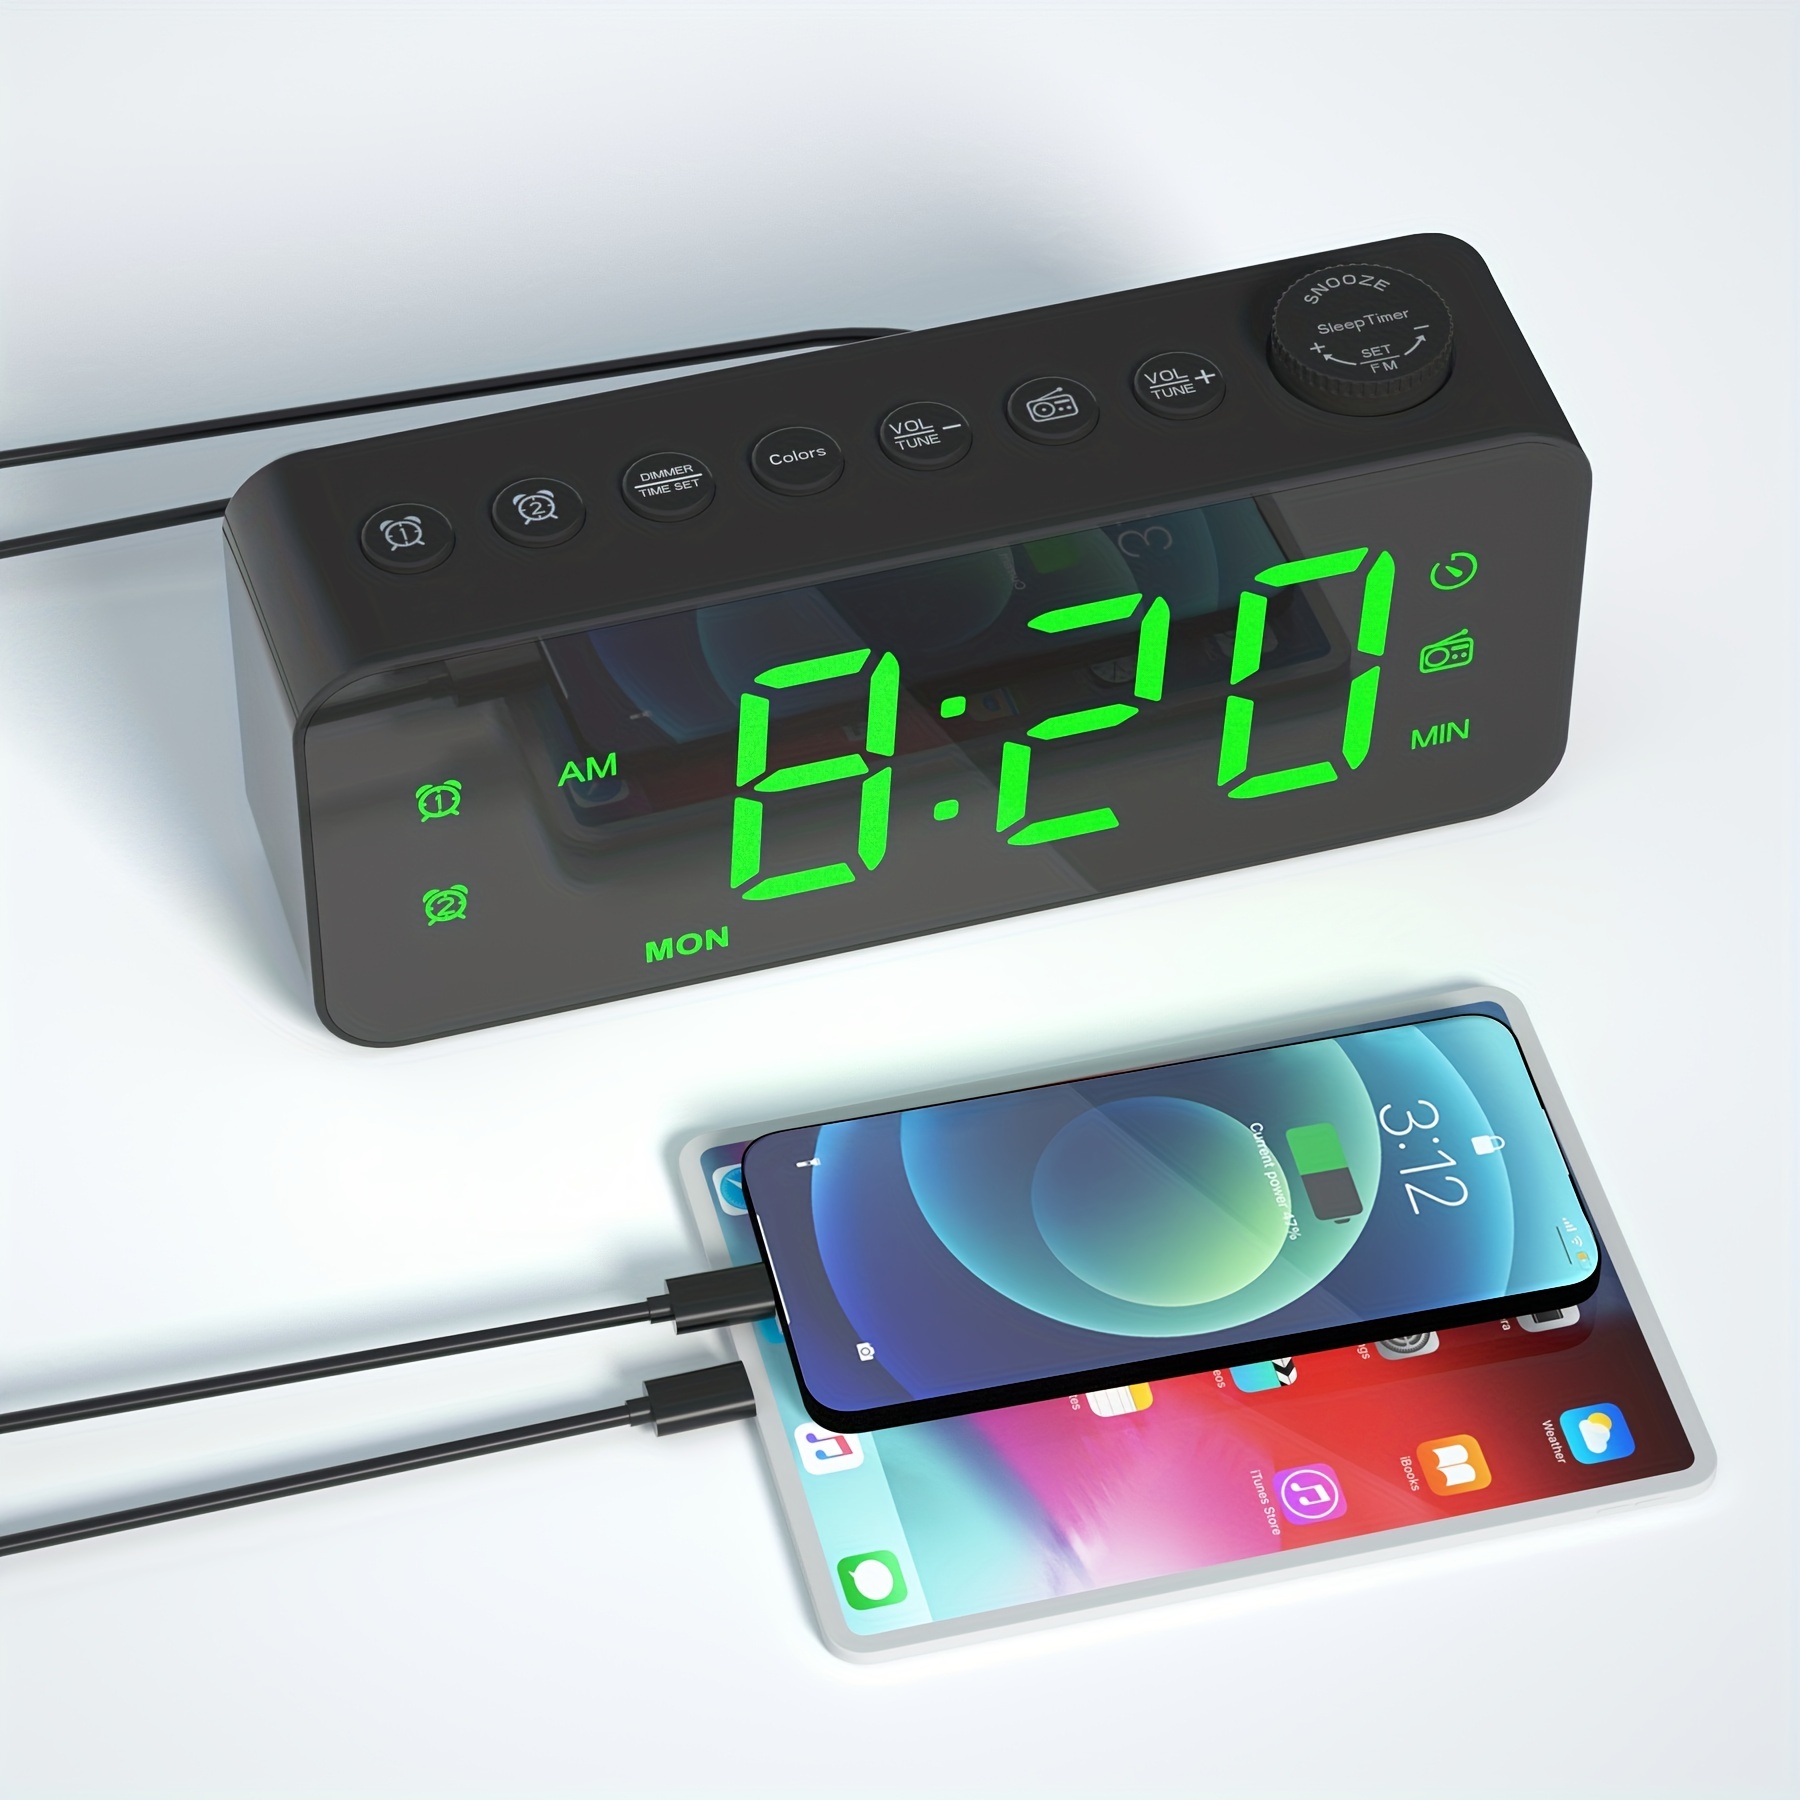 Radio Reloj con Alarma Dual, Reloj Despertador Digital con 2 Puertos de  Carga USB, 0-100% Regulable, Volumen Ajustable, Termómetro Interior  (Blanco)